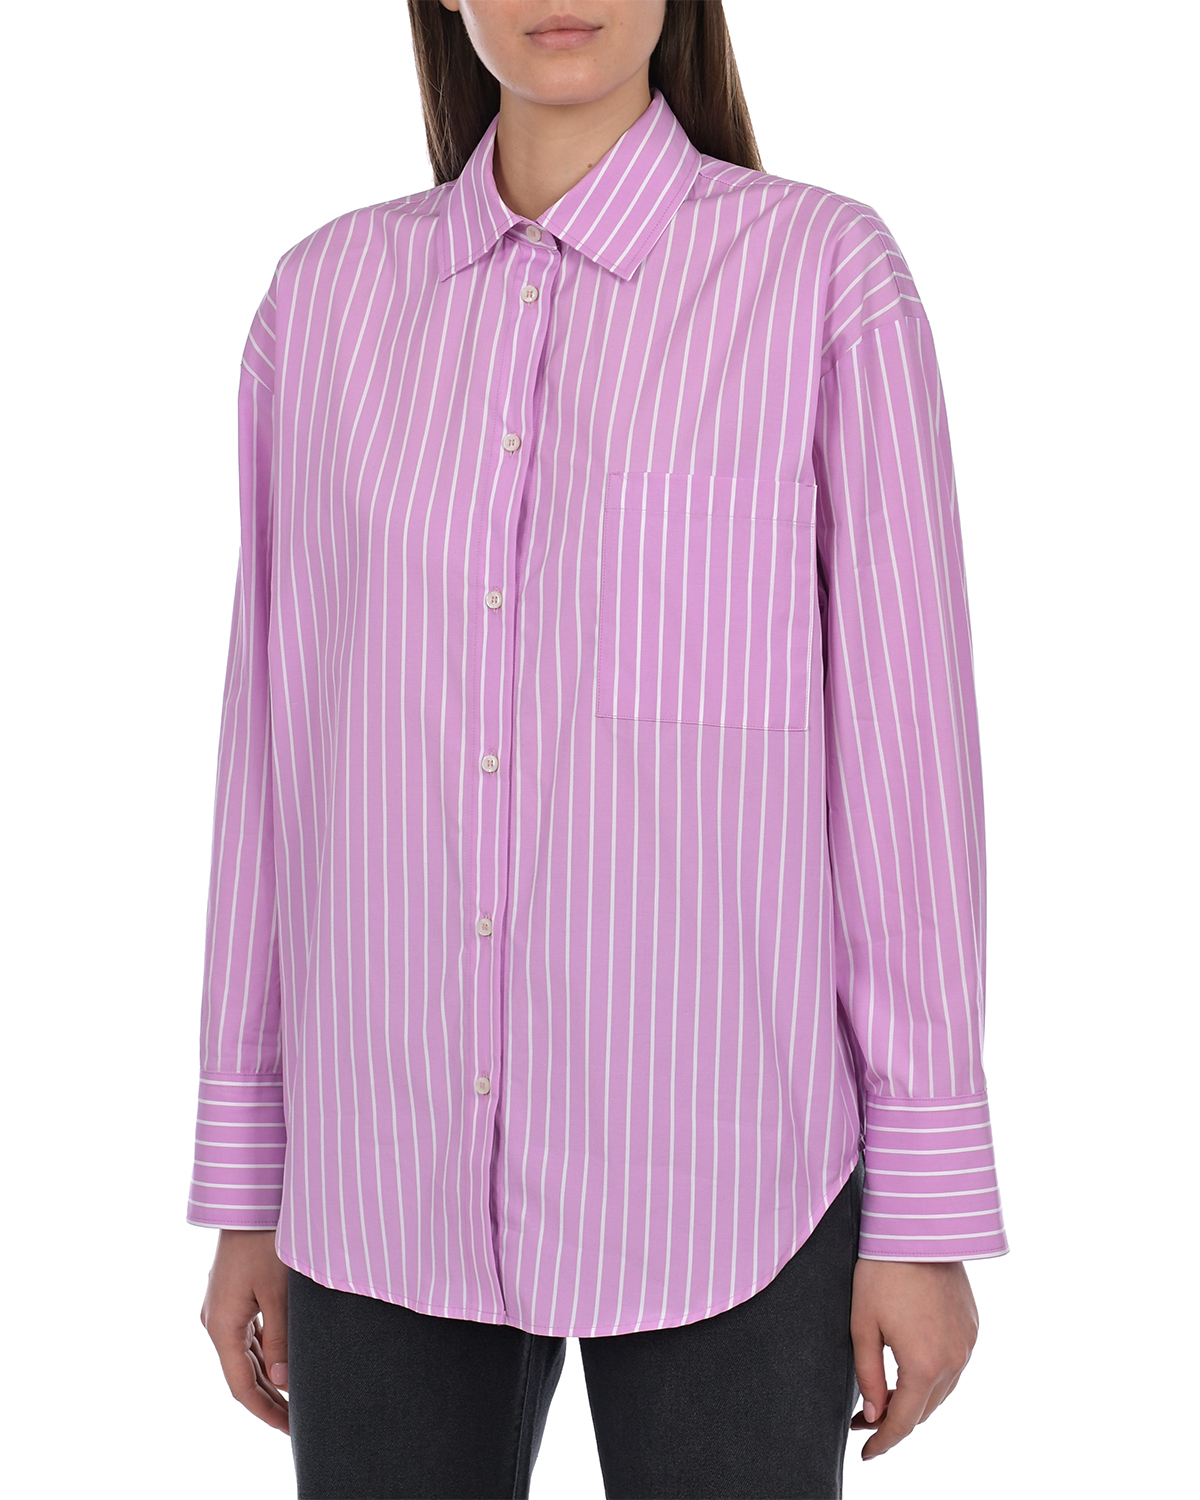 Розовая рубашка в полоску. MSGM полосатая рубашка.